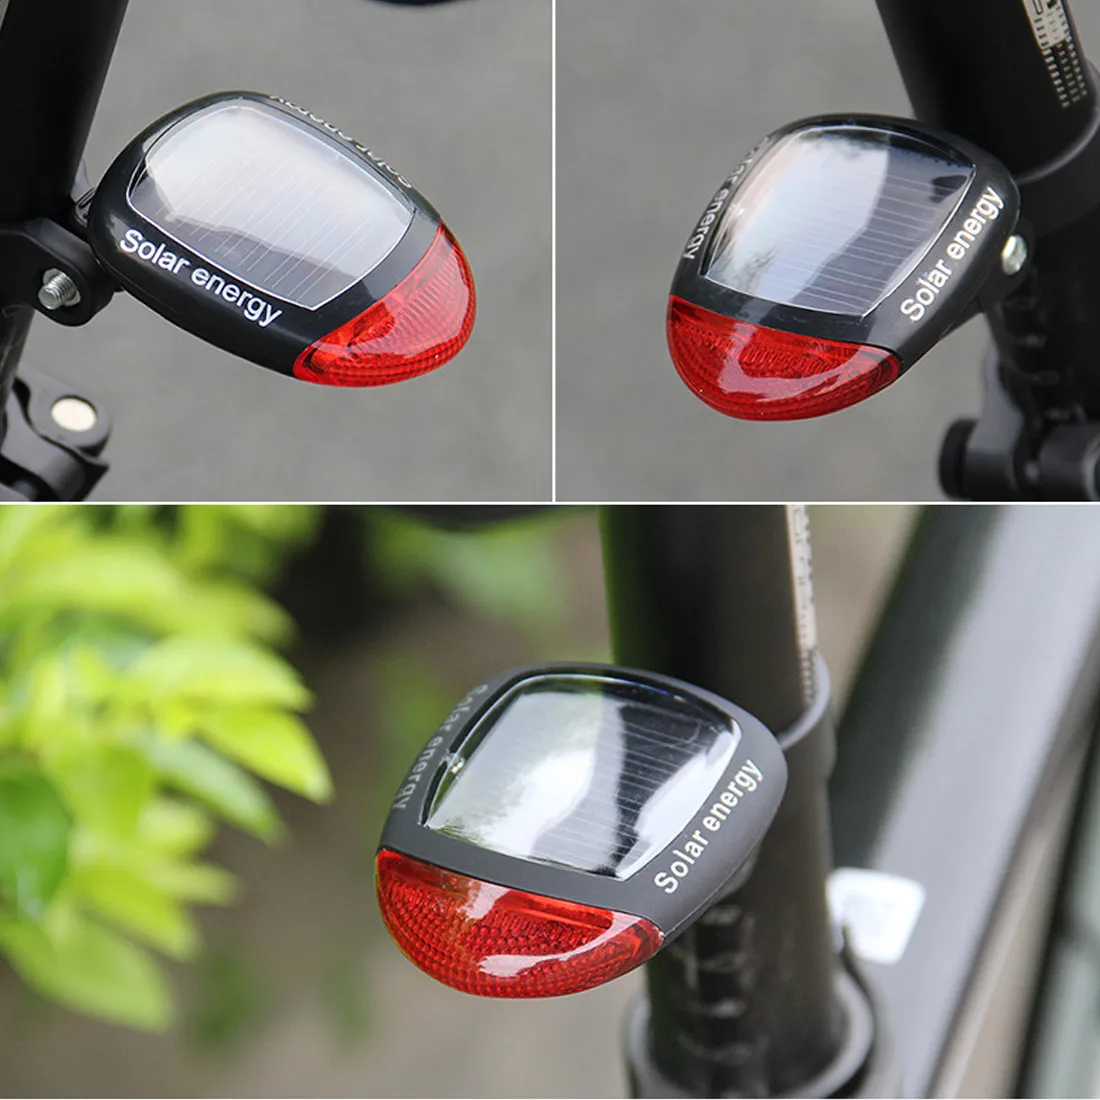 Bisiklet Işık Güneş Enerjili LED Arka Yanıp Sönen Kuyruk Işık Bisiklet Bisiklet Lambası için Güvenlik Uyarı Yanıp Sönen Işık Bisiklet Aksesuar